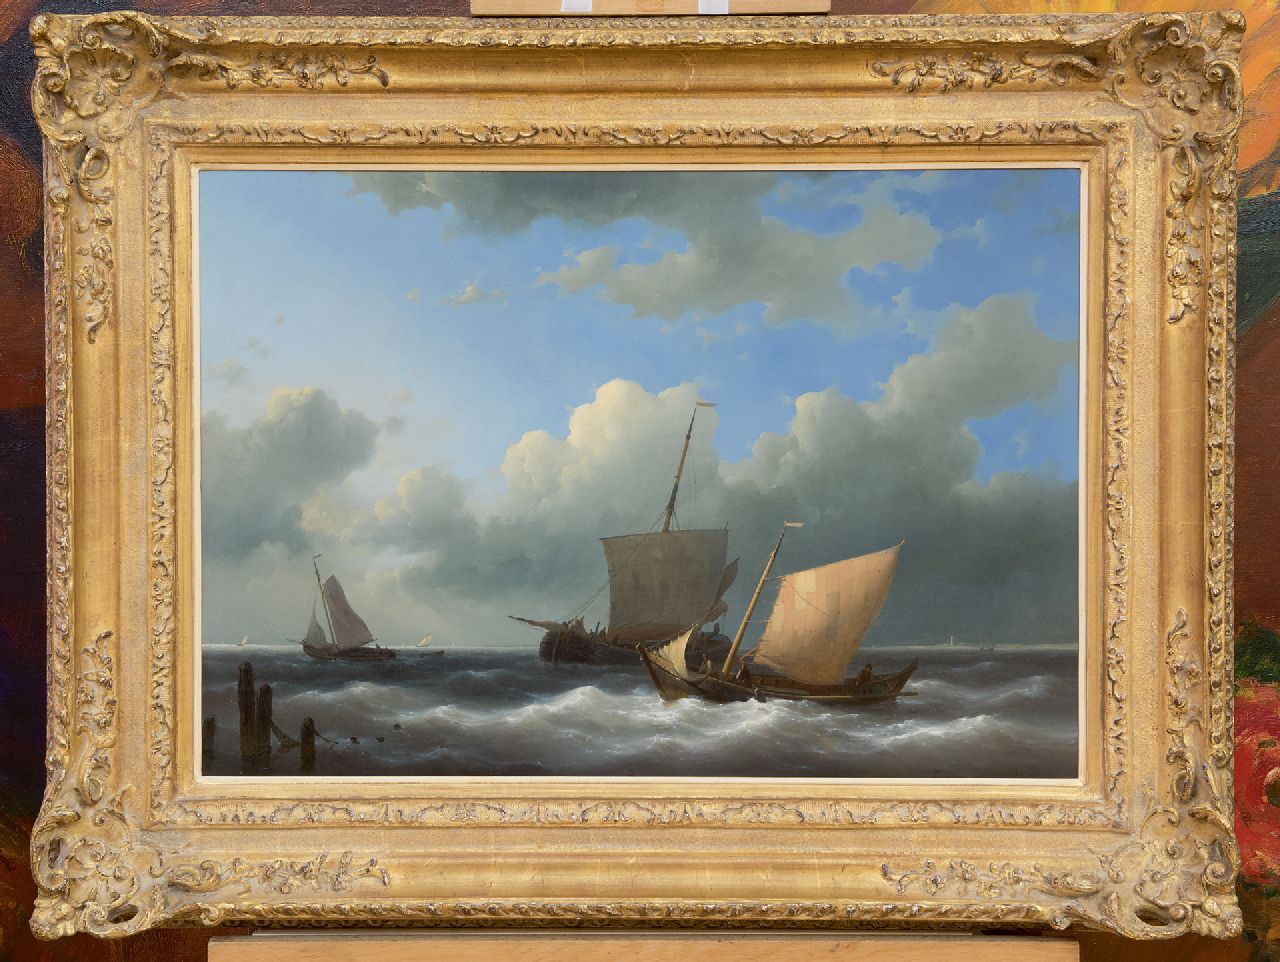 Hulk A.  | Abraham Hulk | Schilderijen te koop aangeboden | Zeilschepen voor een haveningang, olieverf op paneel 44,5 x 62,7 cm, gesigneerd rechtsonder en gedateerd 1846